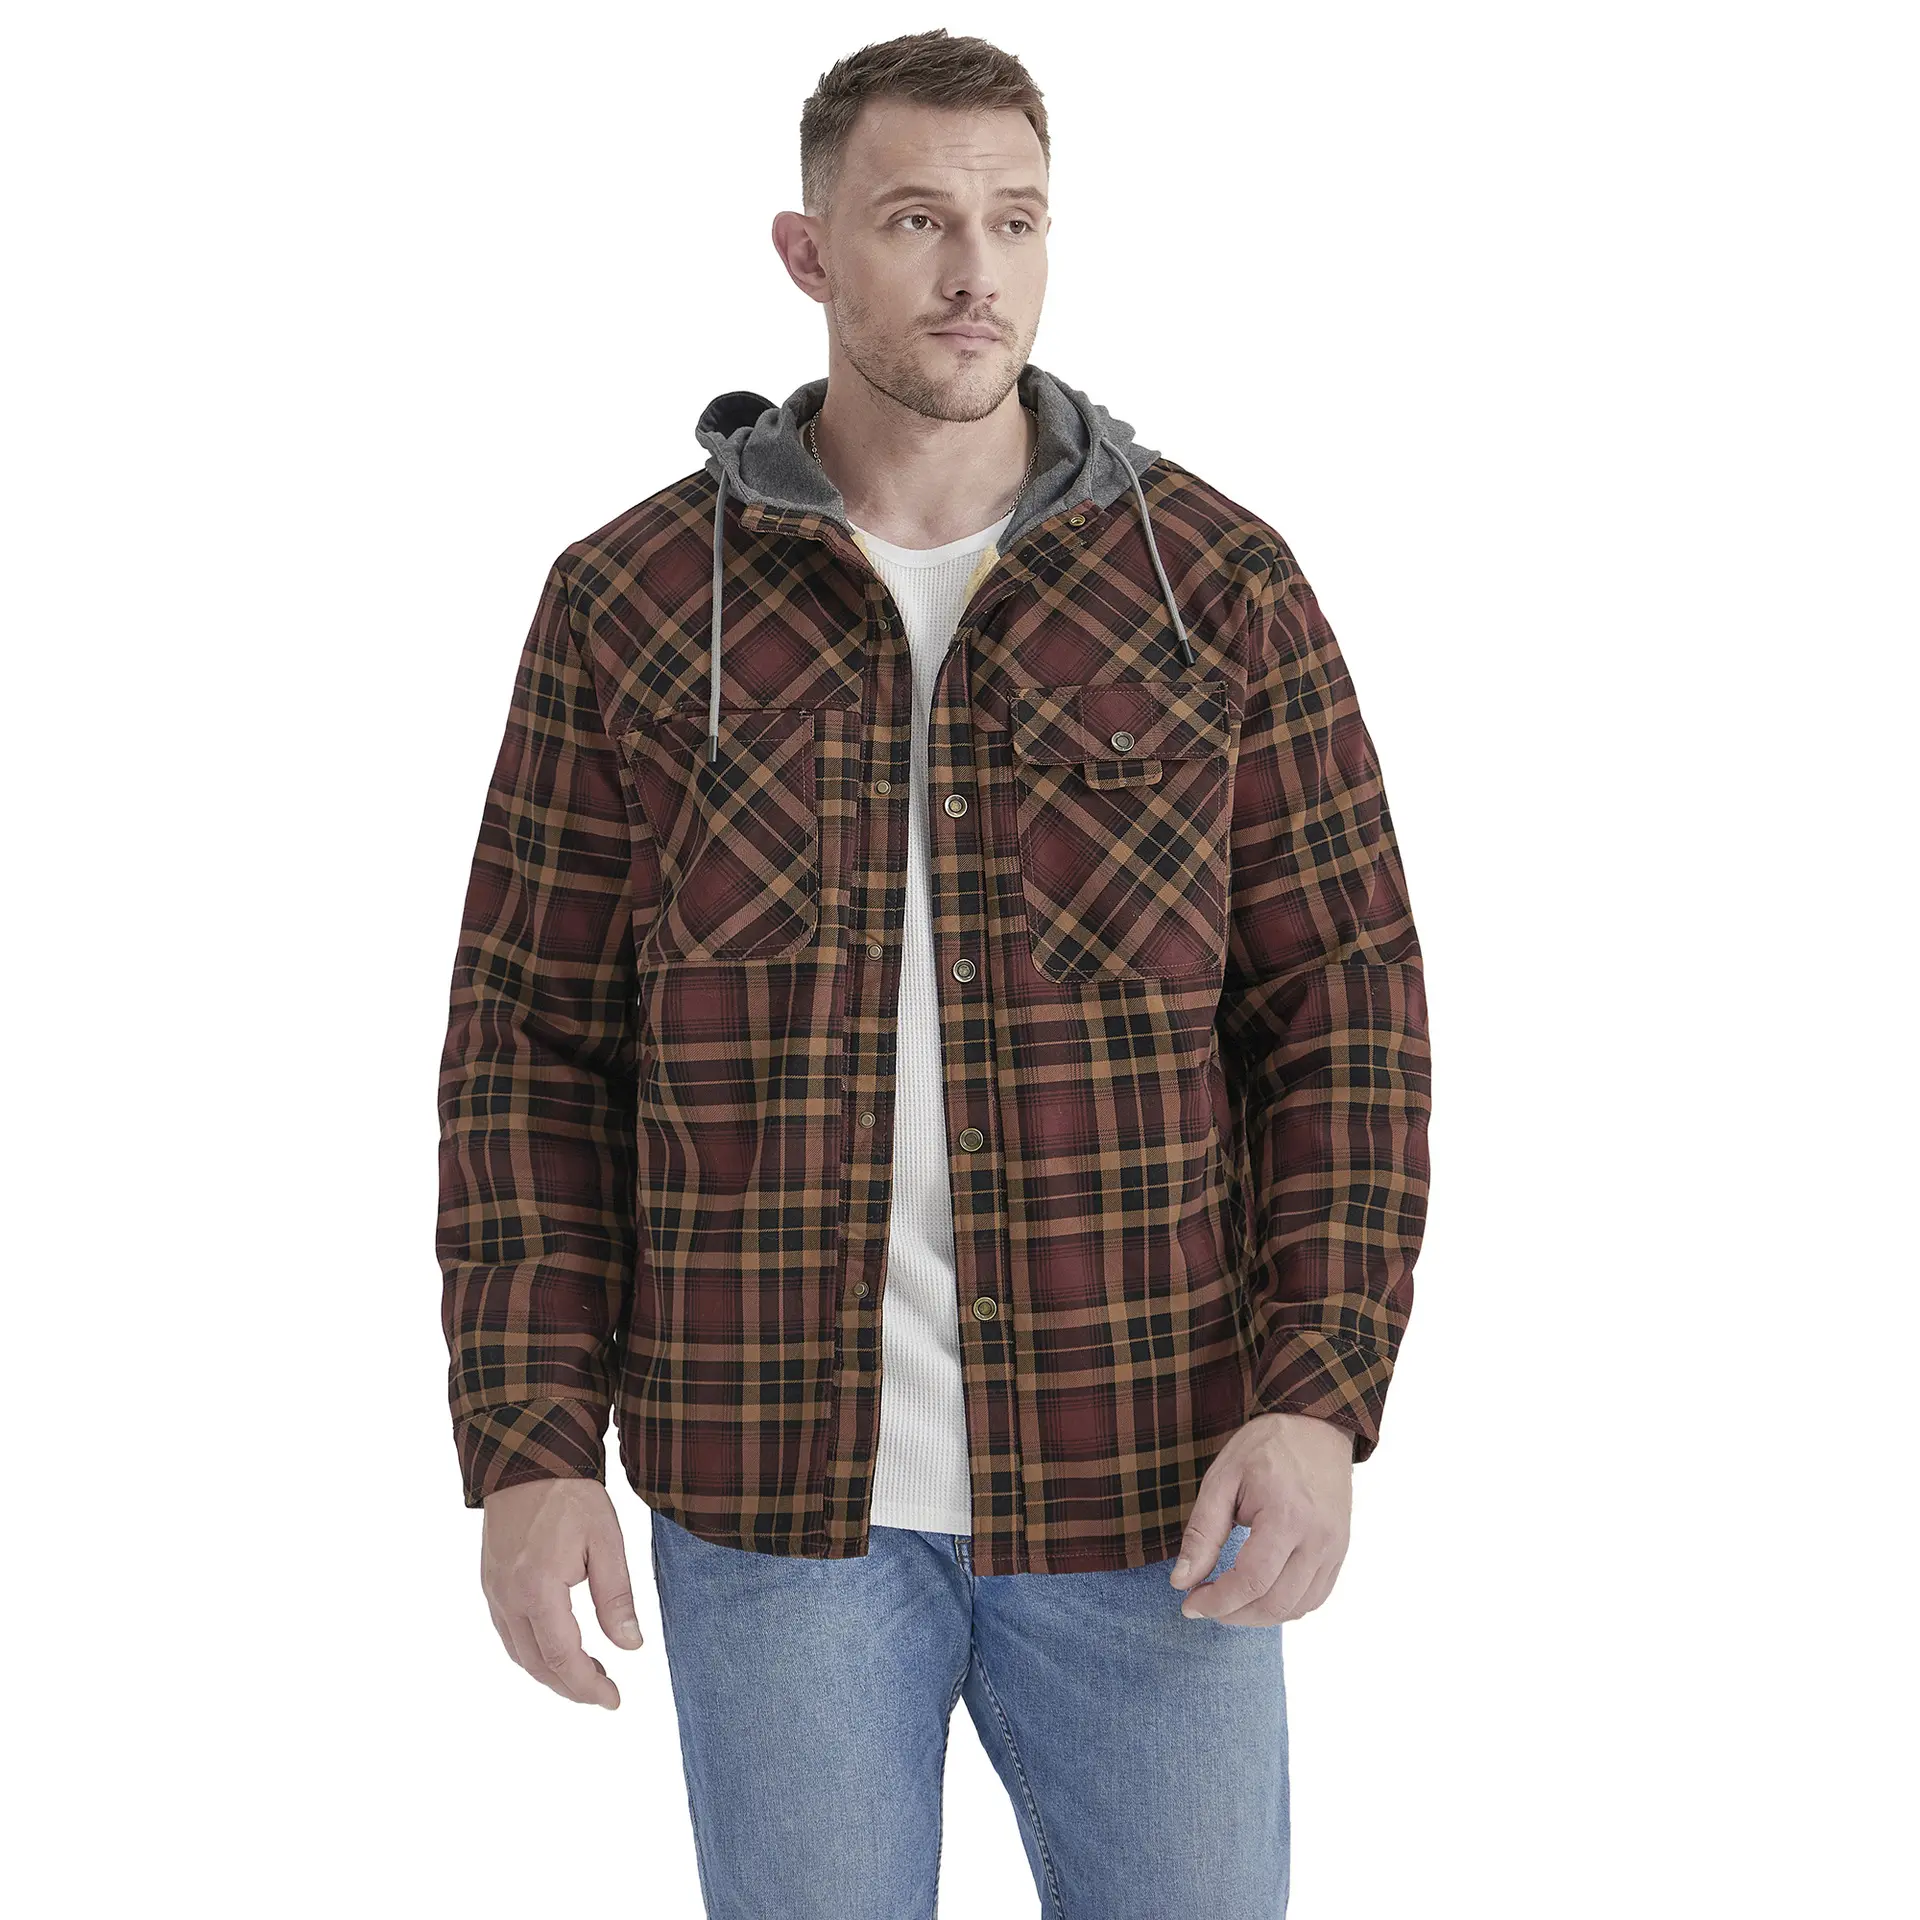 Abrigo camisa a cuadros más terciopelo de gran tamaño invierno a prueba de viento cálido algodón camisas para hombre chaqueta con capucha de manga larga